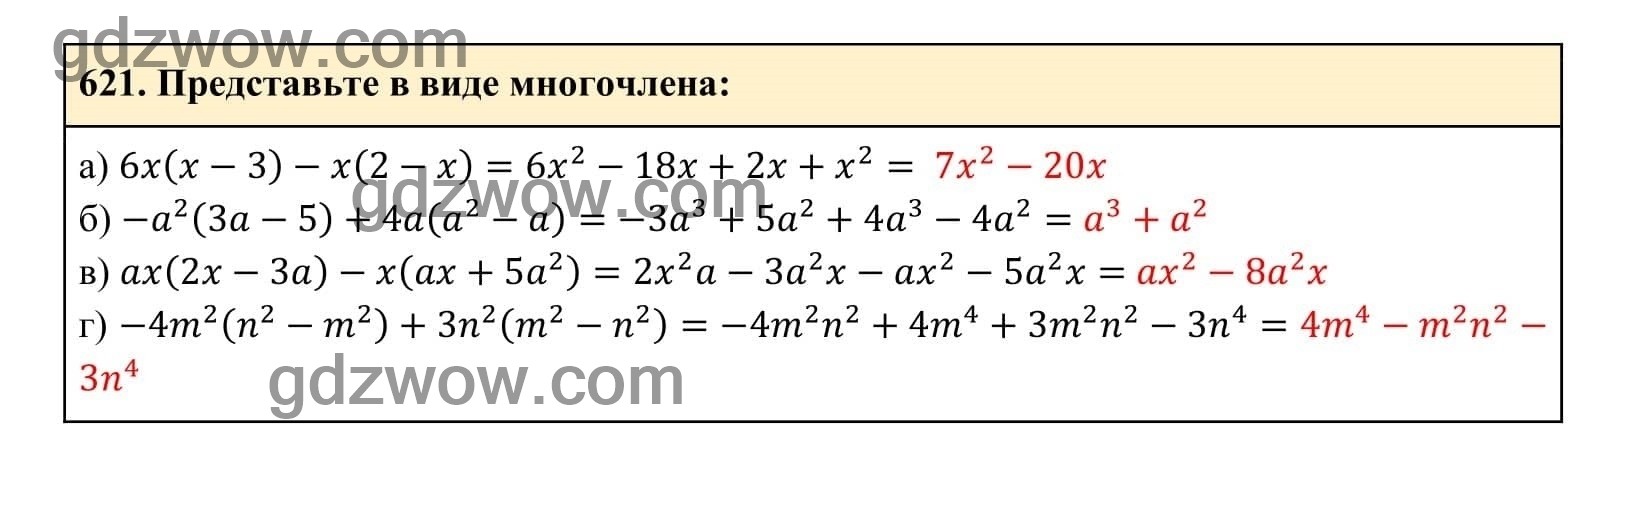 Упражнение 621 - ГДЗ по Алгебре 7 класс Учебник Макарычев (решебник) - GDZwow